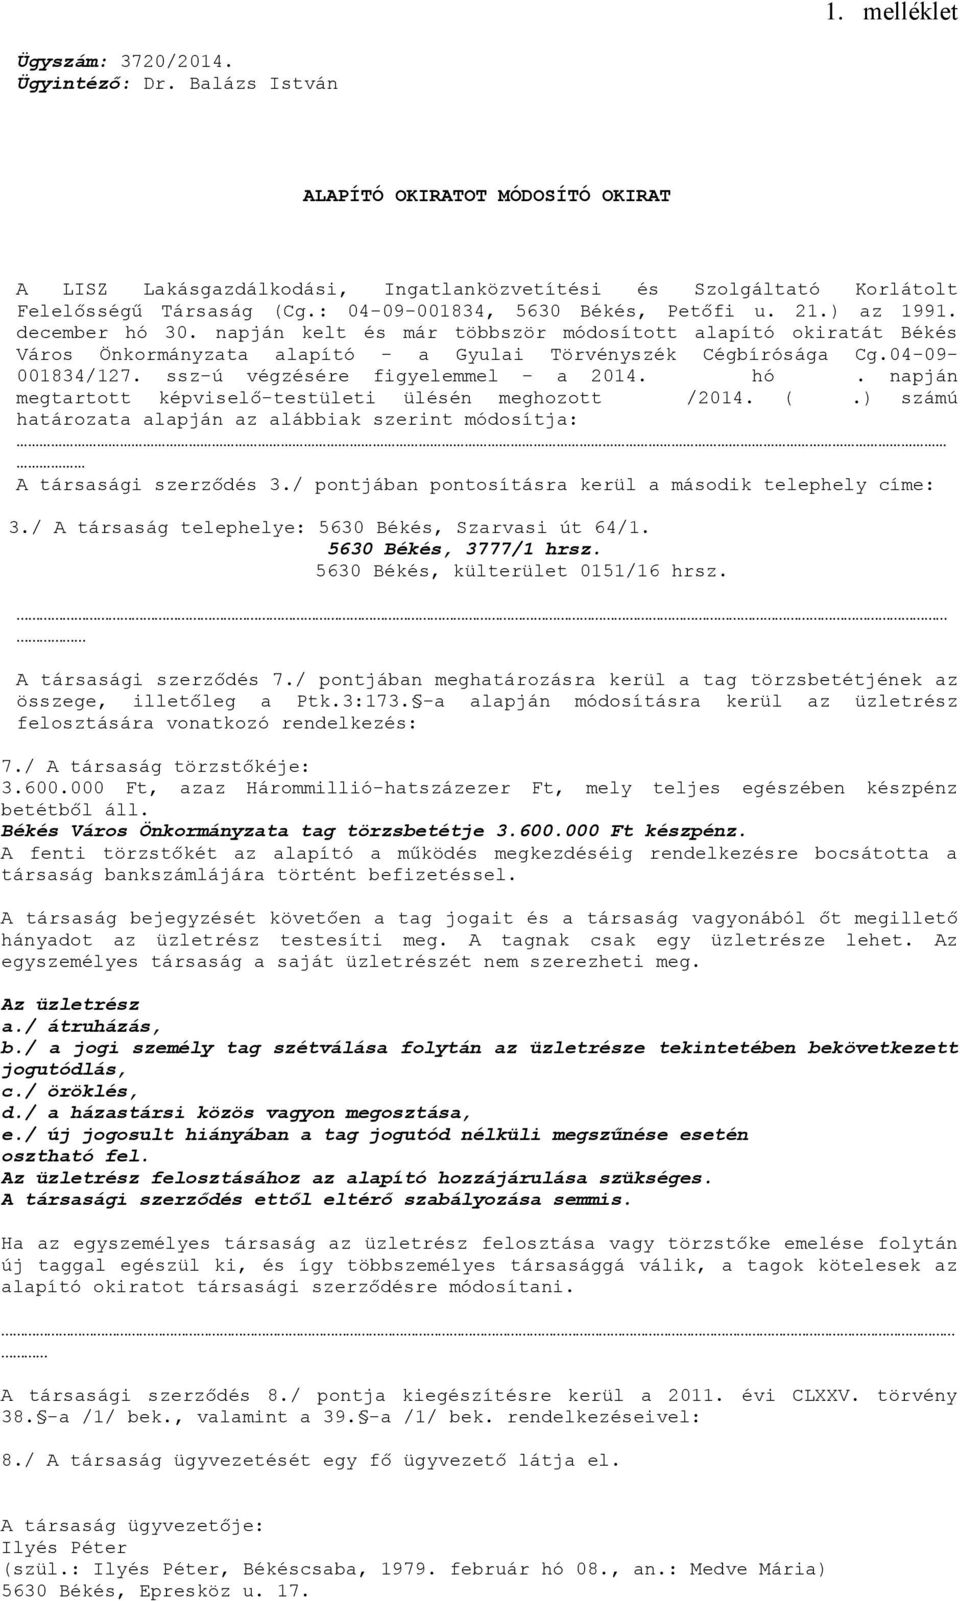 04-09- 001834/127. ssz-ú végzésére figyelemmel - a 2014. hó. napján megtartott képviselő-testületi ülésén meghozott /2014. (.